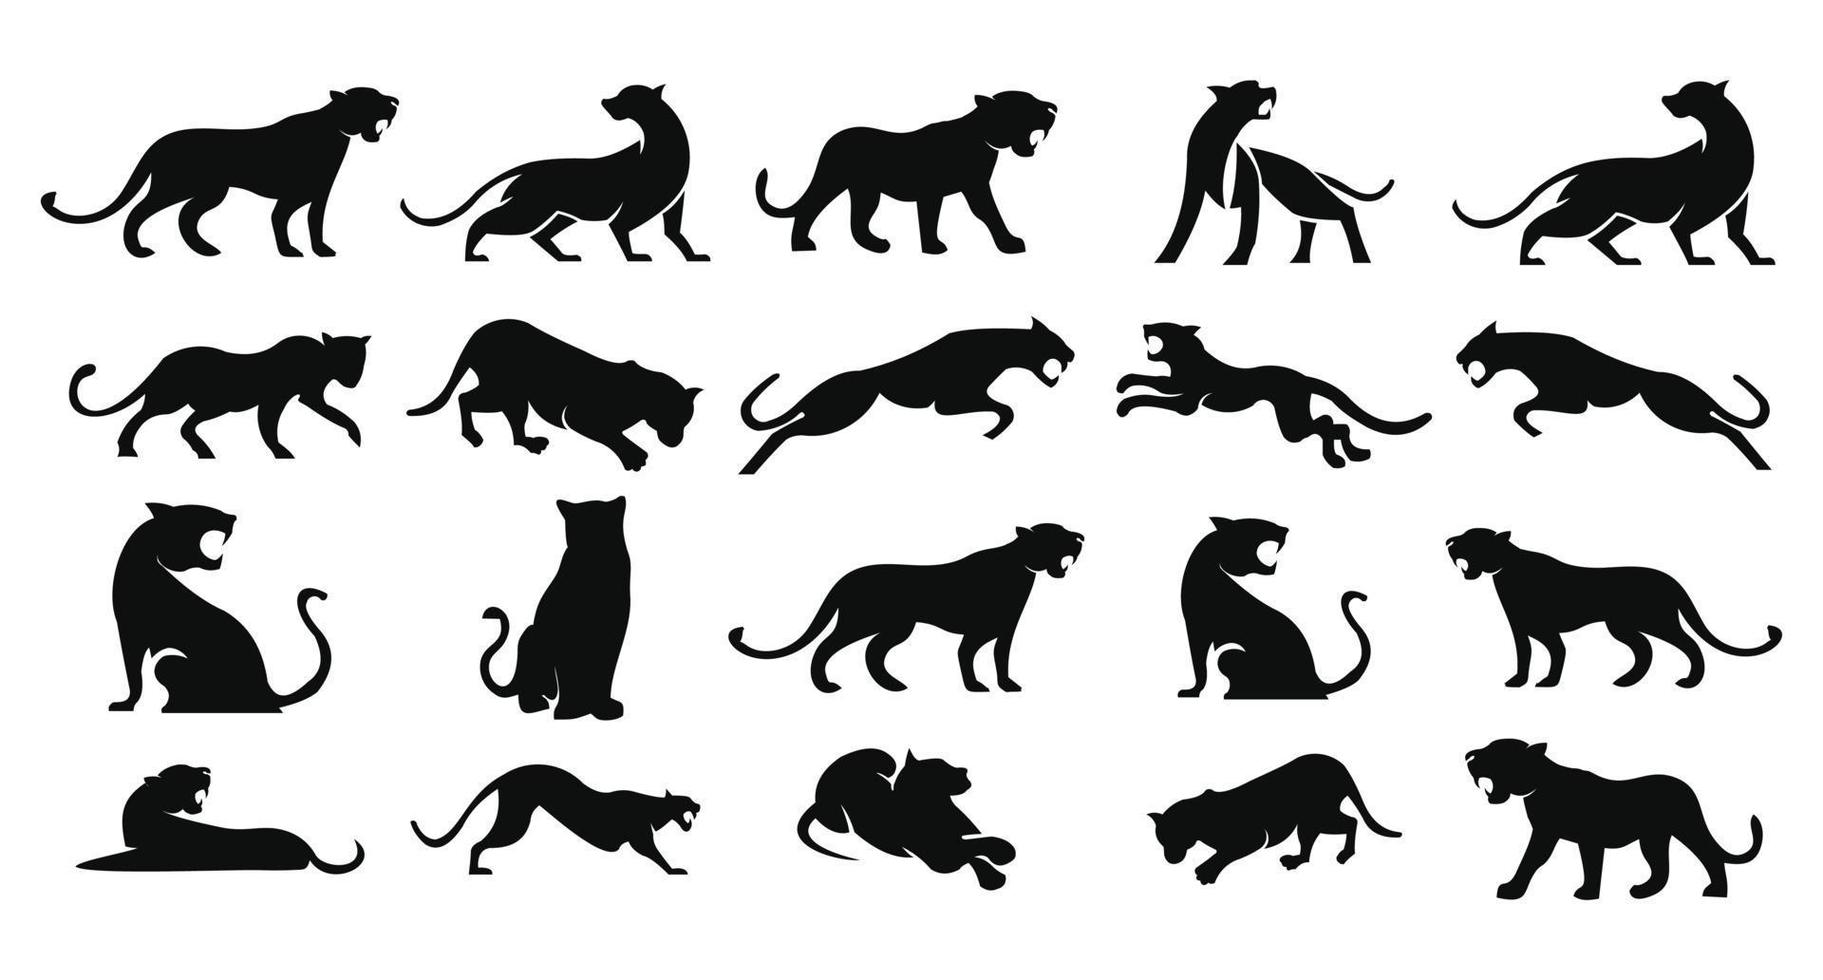 luipaarden, puma, panter en tijger actie silhouet. goed gebruik voor symbool, logo, webpictogram, mascot, teken, sticker vector